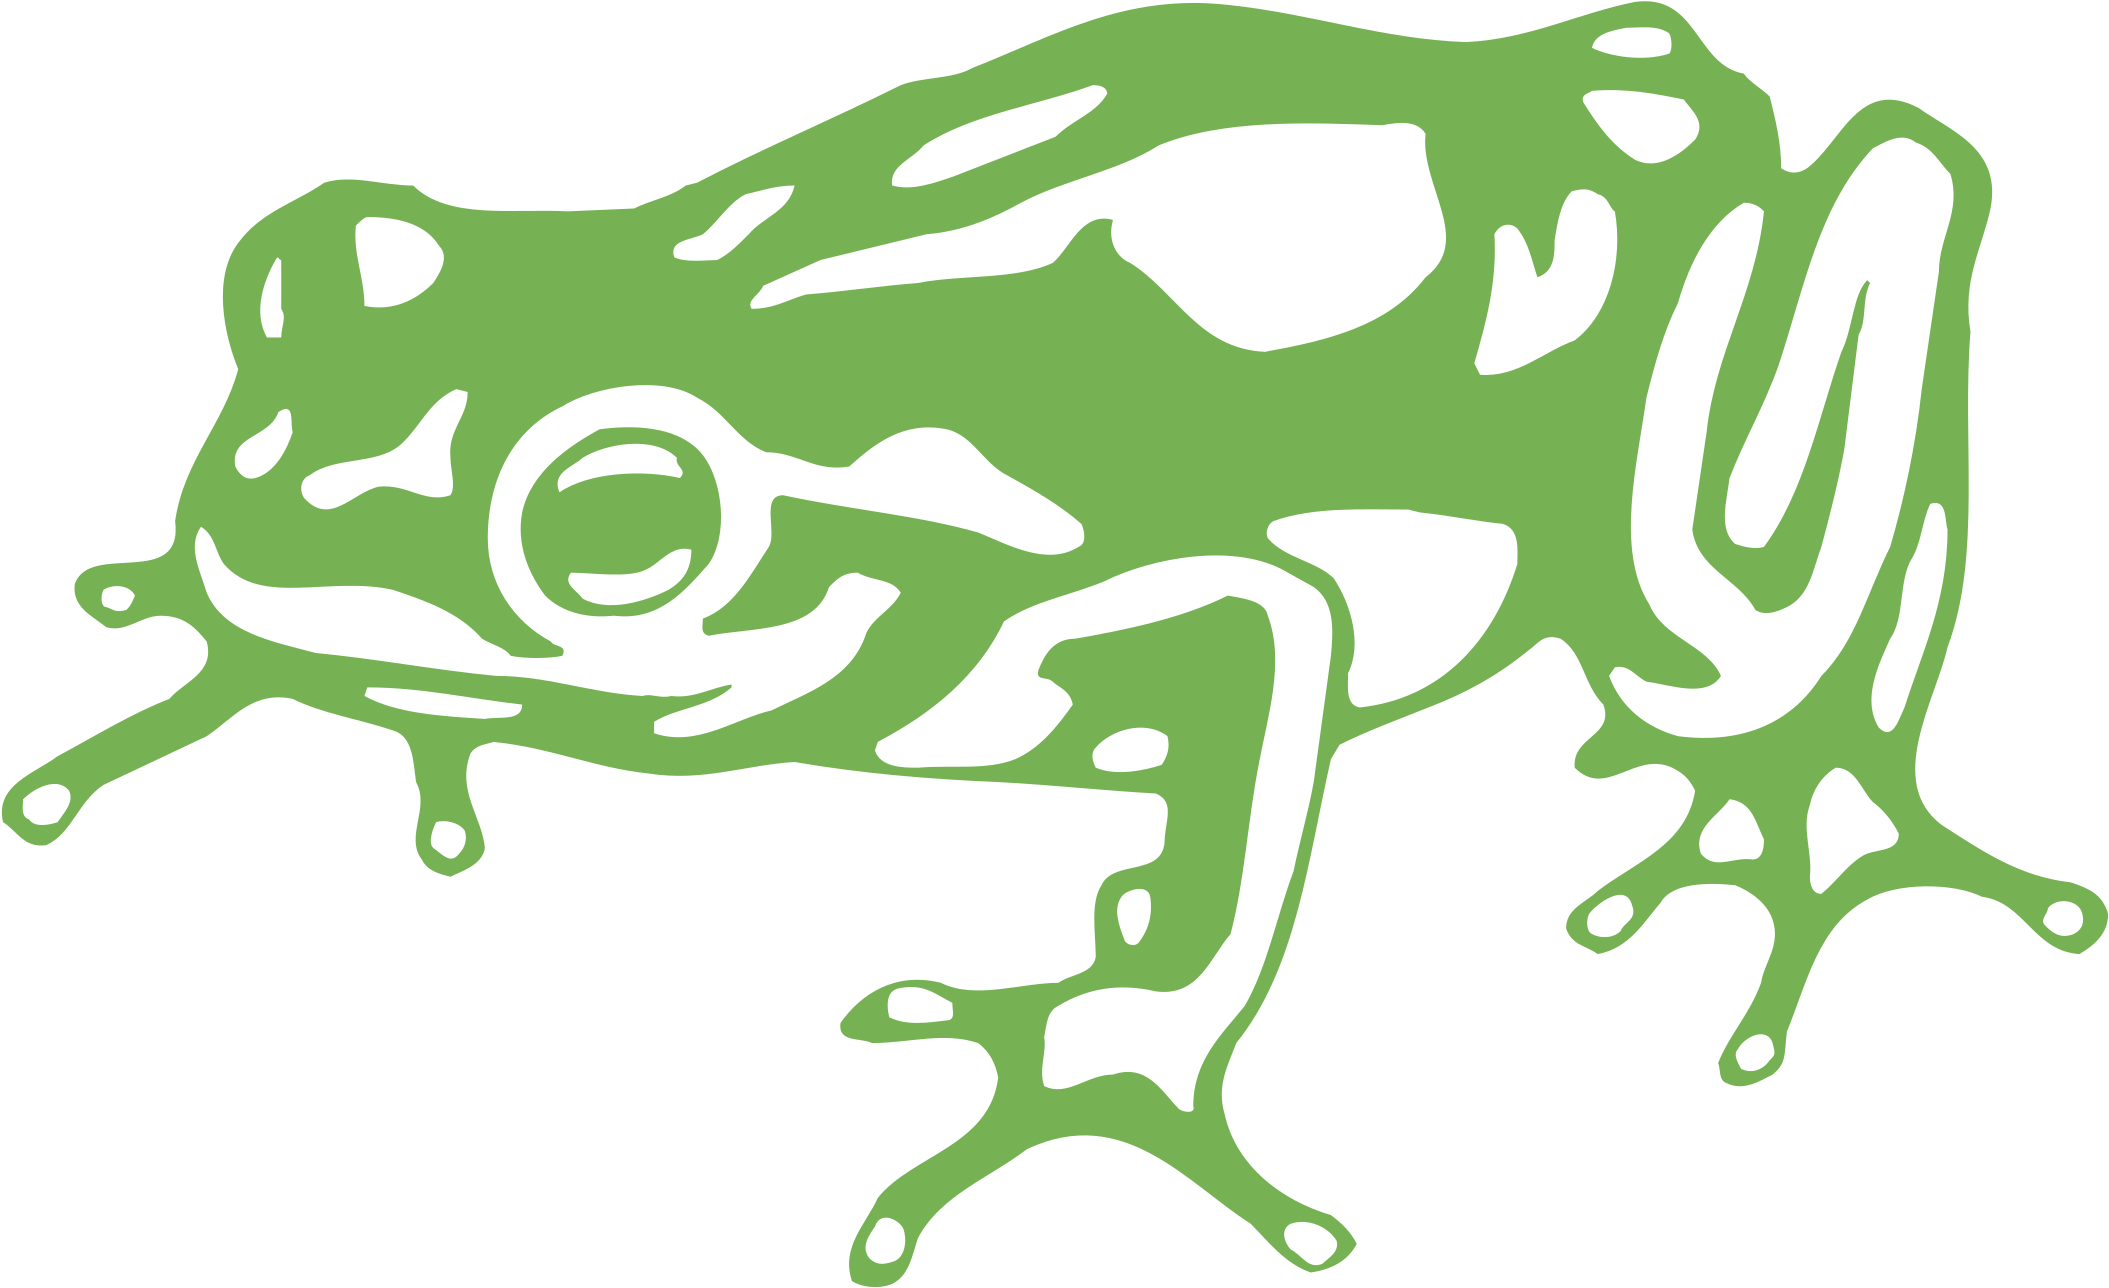 Frog Design Logo Png Transparent - Frog Design Logo Png (2400x2400), Png Download